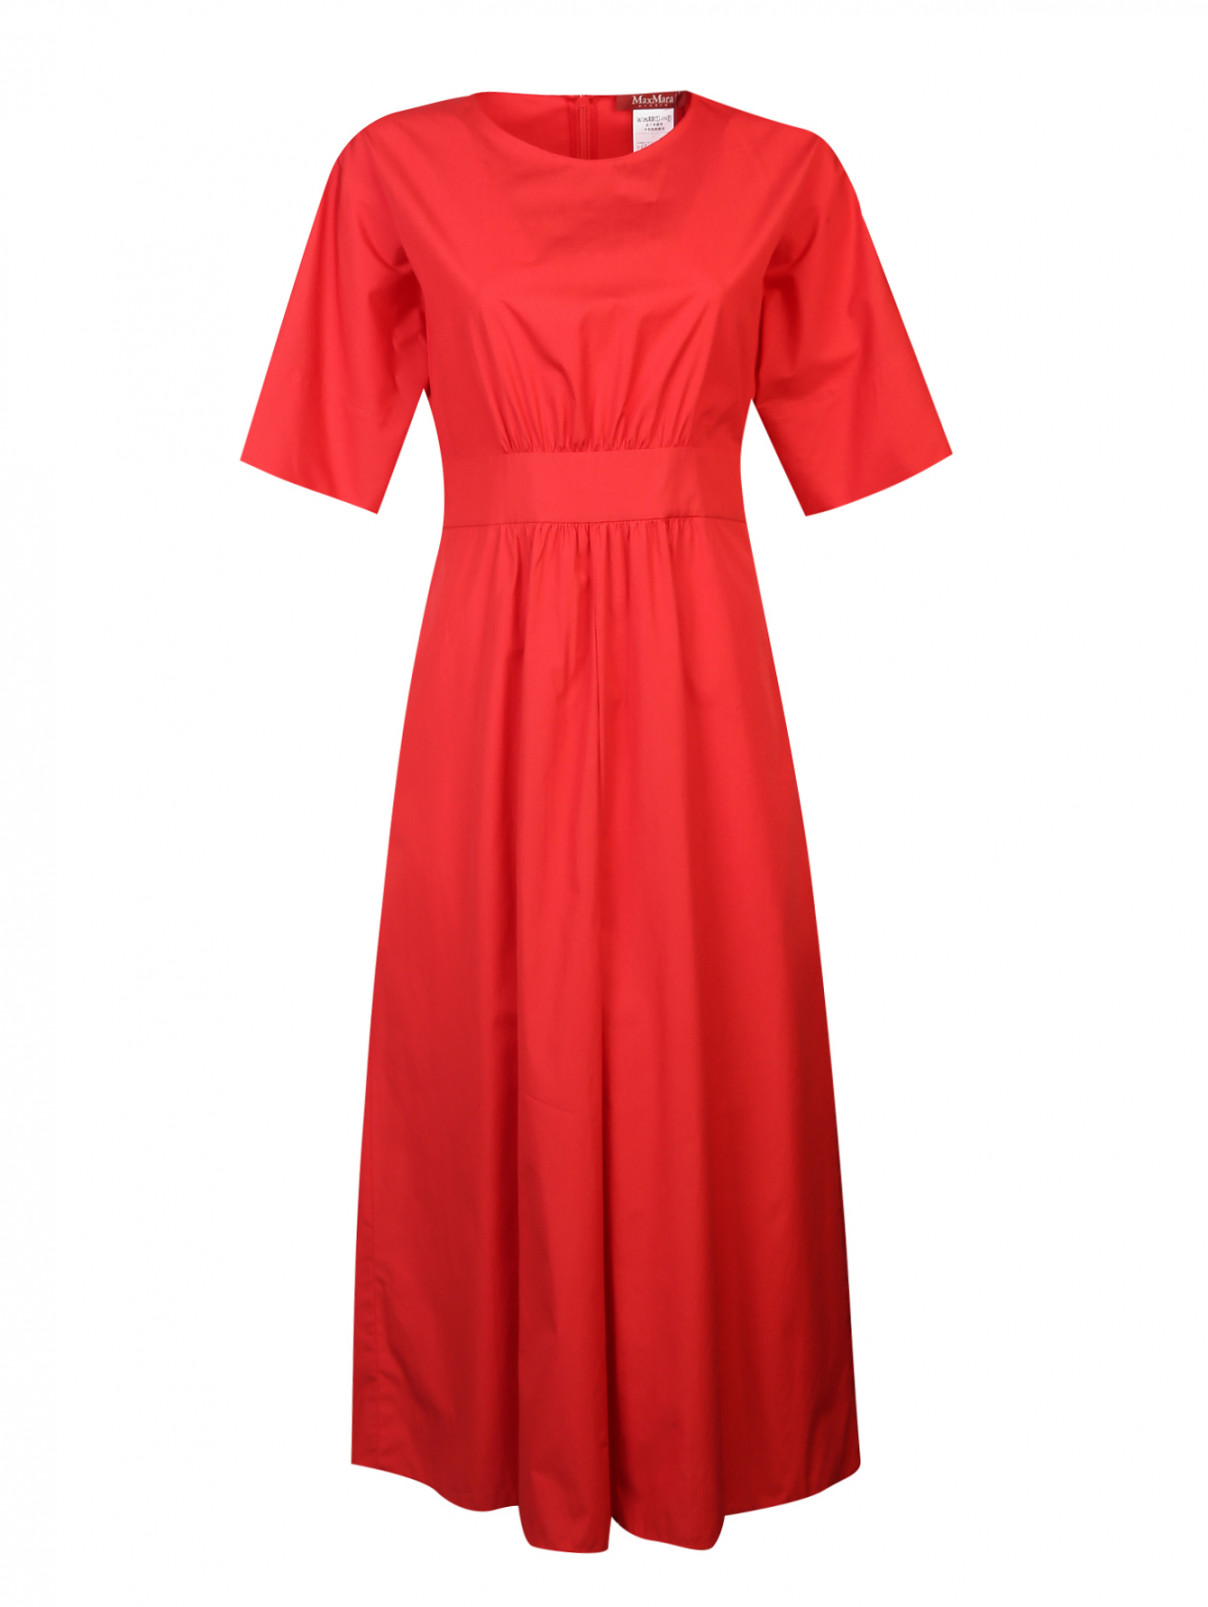 Платье из хлопка со сборками на талии Max Mara  –  Общий вид  – Цвет:  Красный